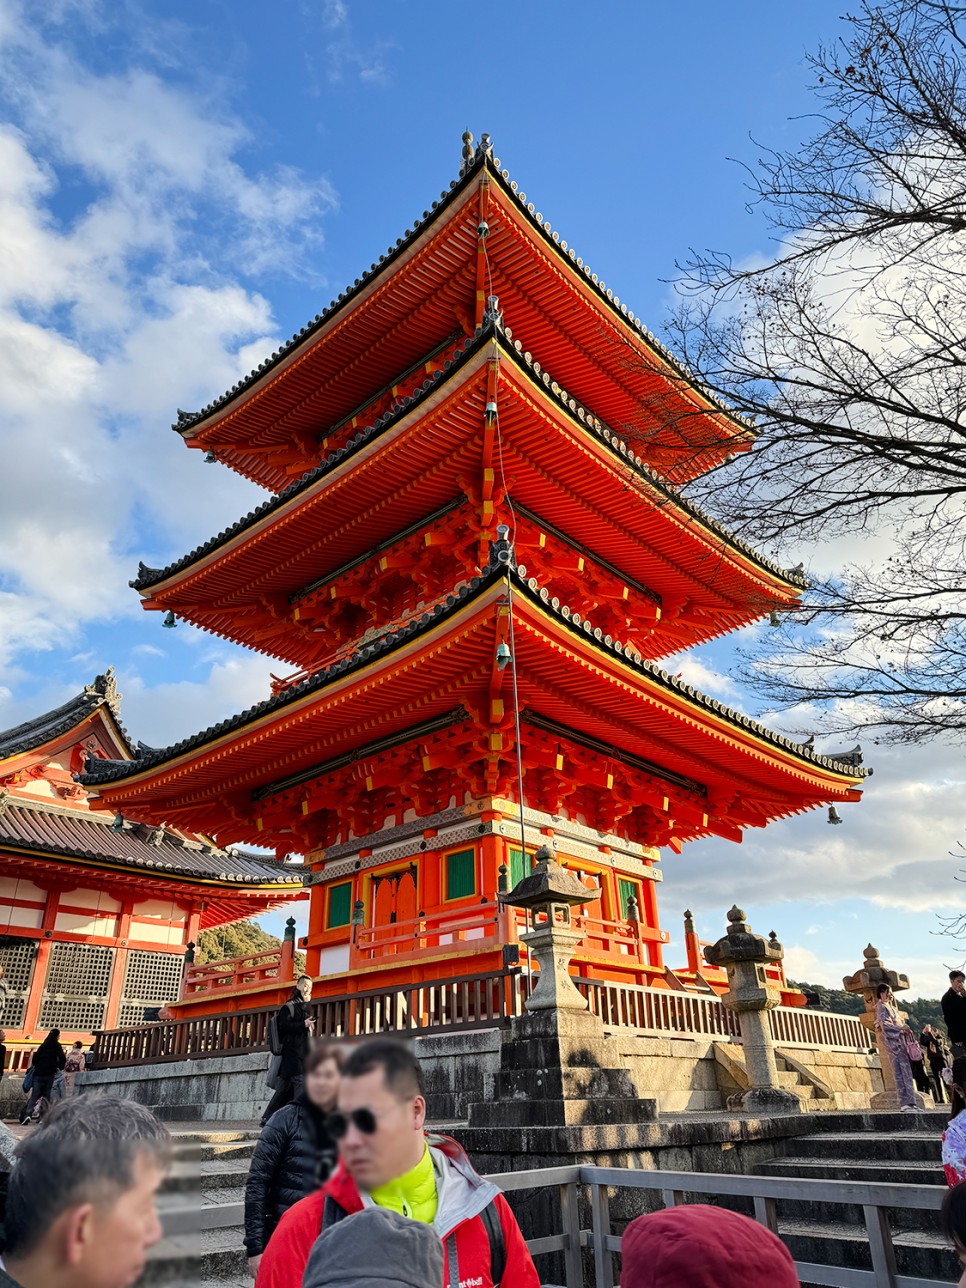 일본 교토 여행, 산넨자카 さんねんざか 거리 + 기요미즈데라 + 야사카의 탑